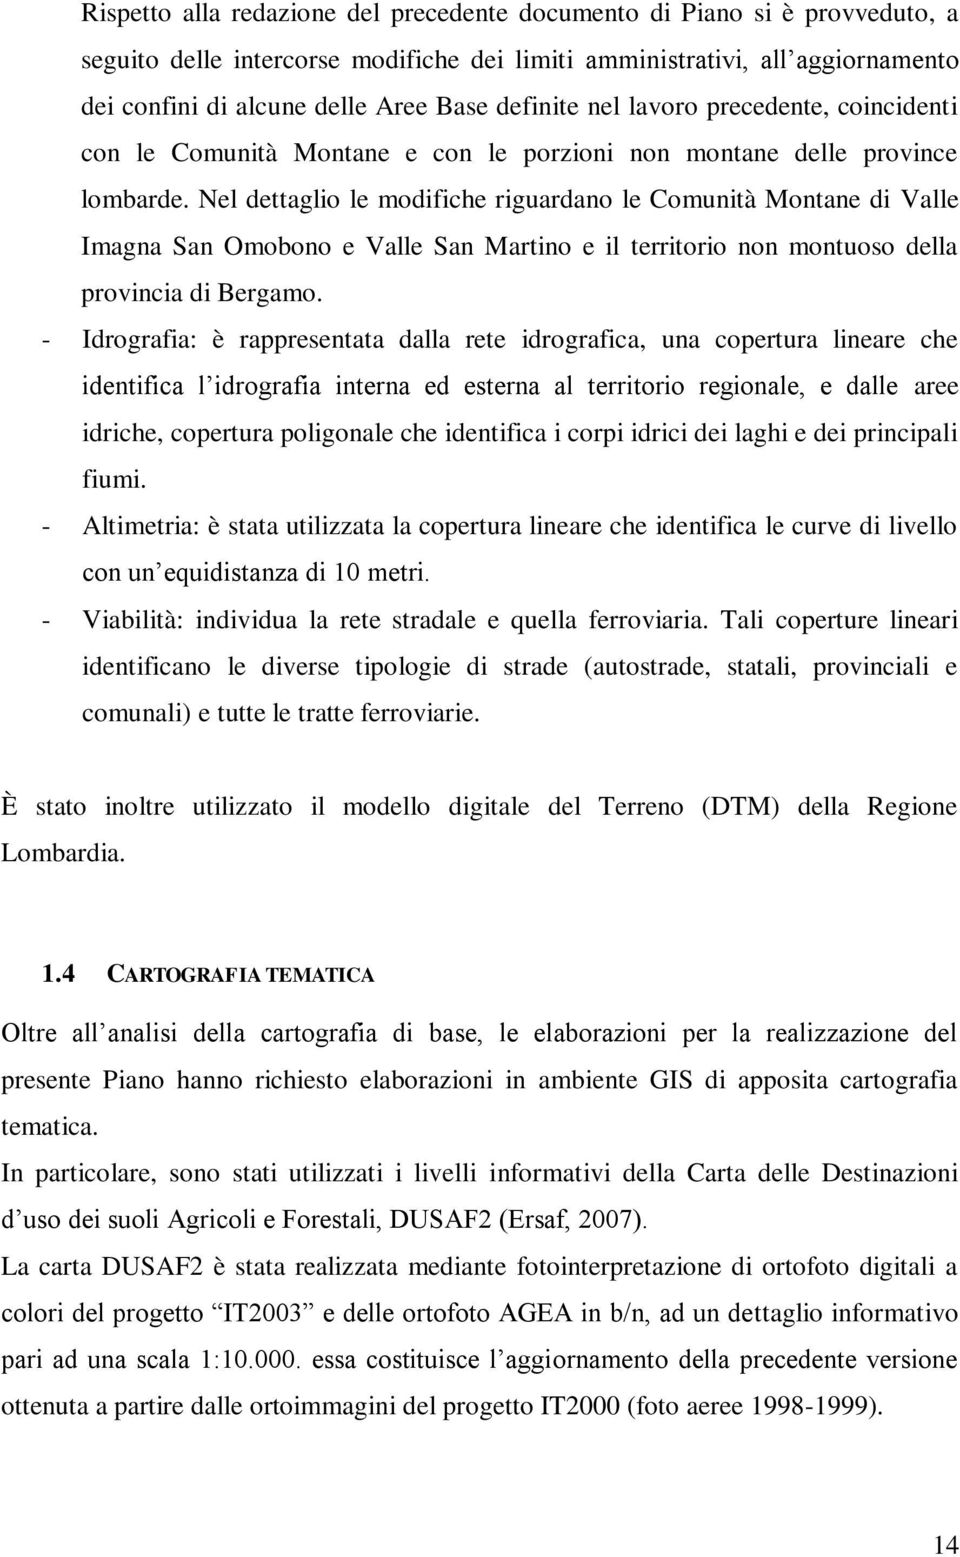 Nel dettaglio le modifiche riguardano le Comunità Montane di Valle Imagna San Omobono e Valle San Martino e il territorio non montuoso della provincia di Bergamo.